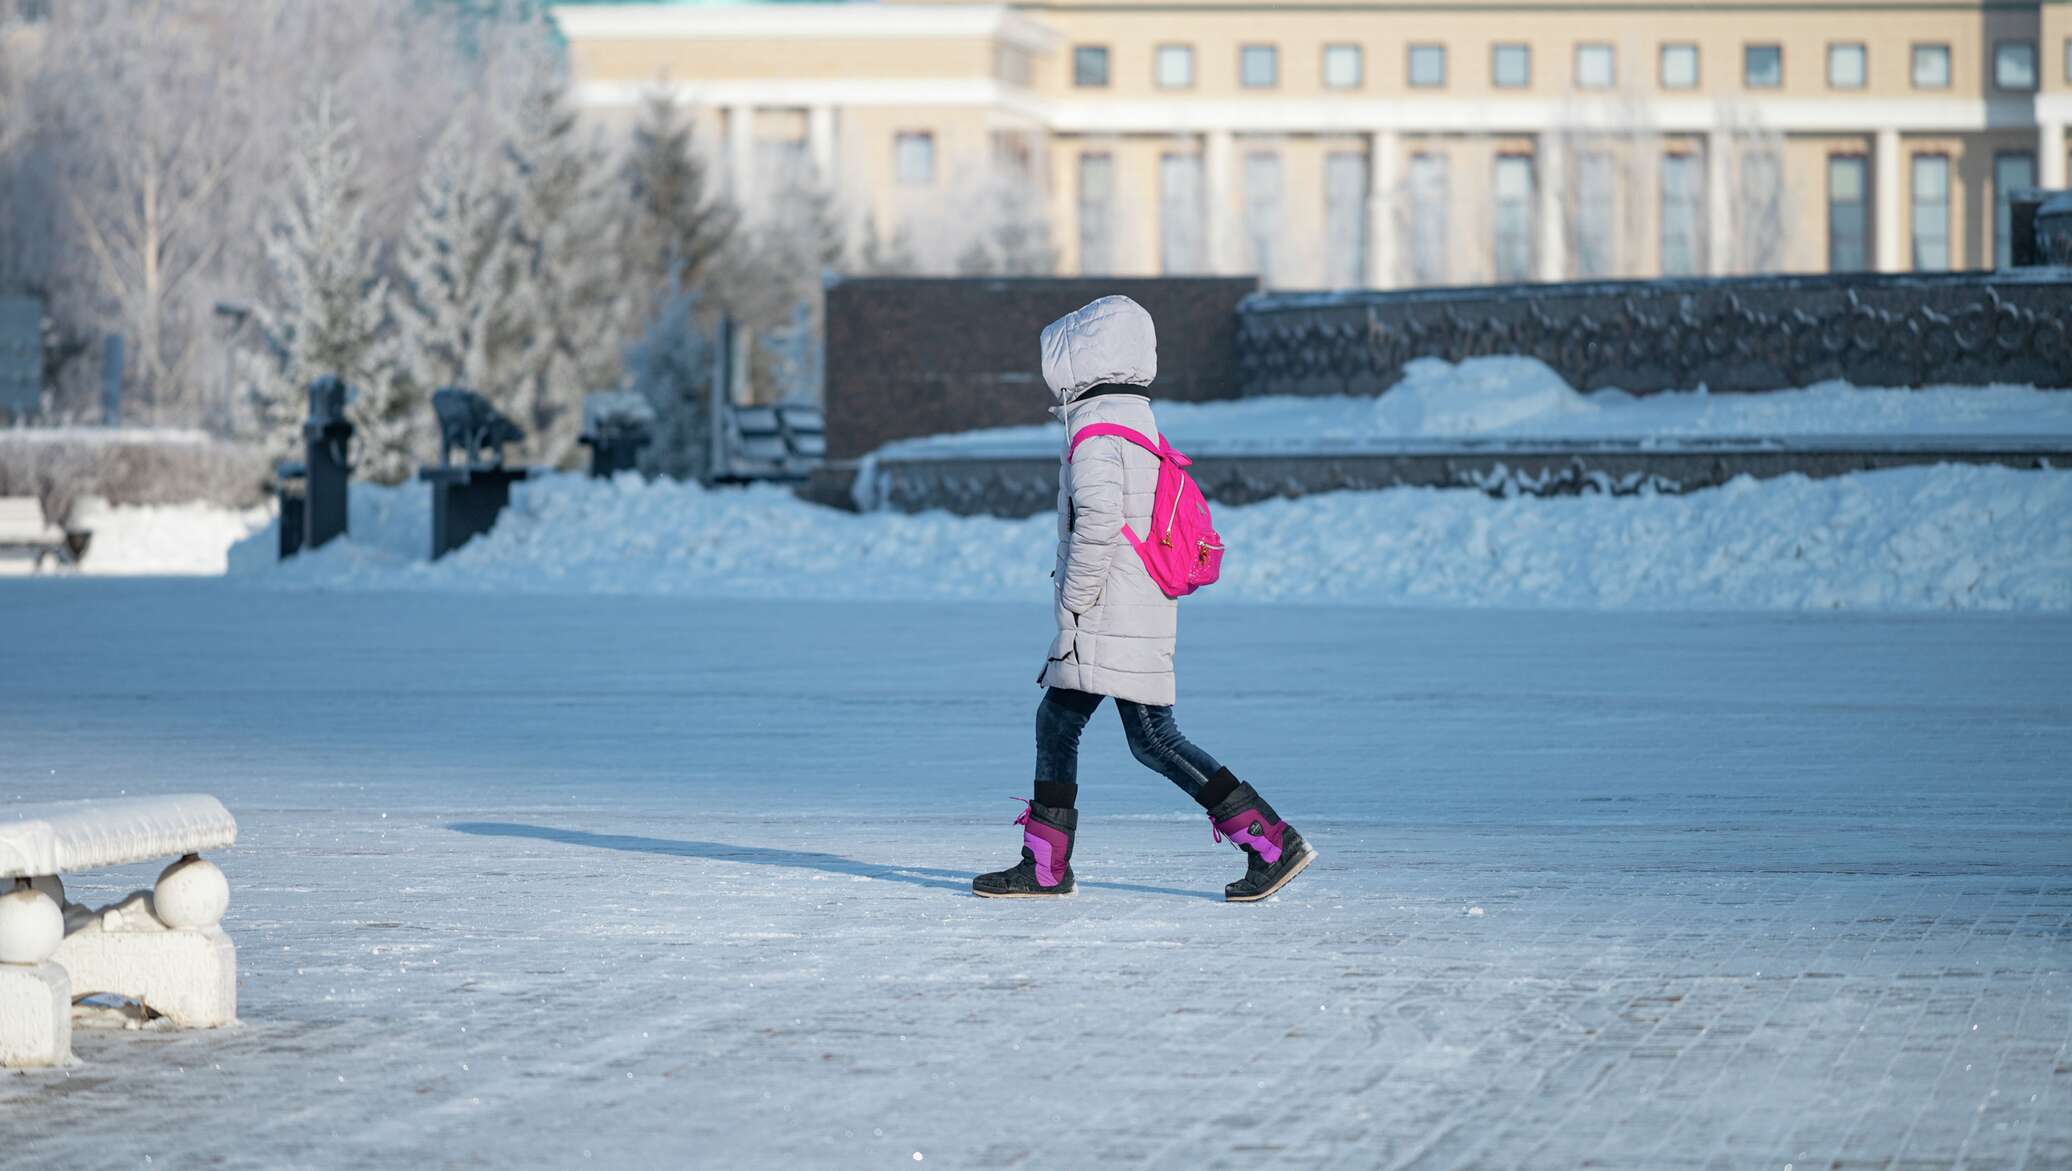 Отменили в виду морозов. Отменили школу из за Мороза дети хоккей. Школьники в Мороз Казахстан 1978.